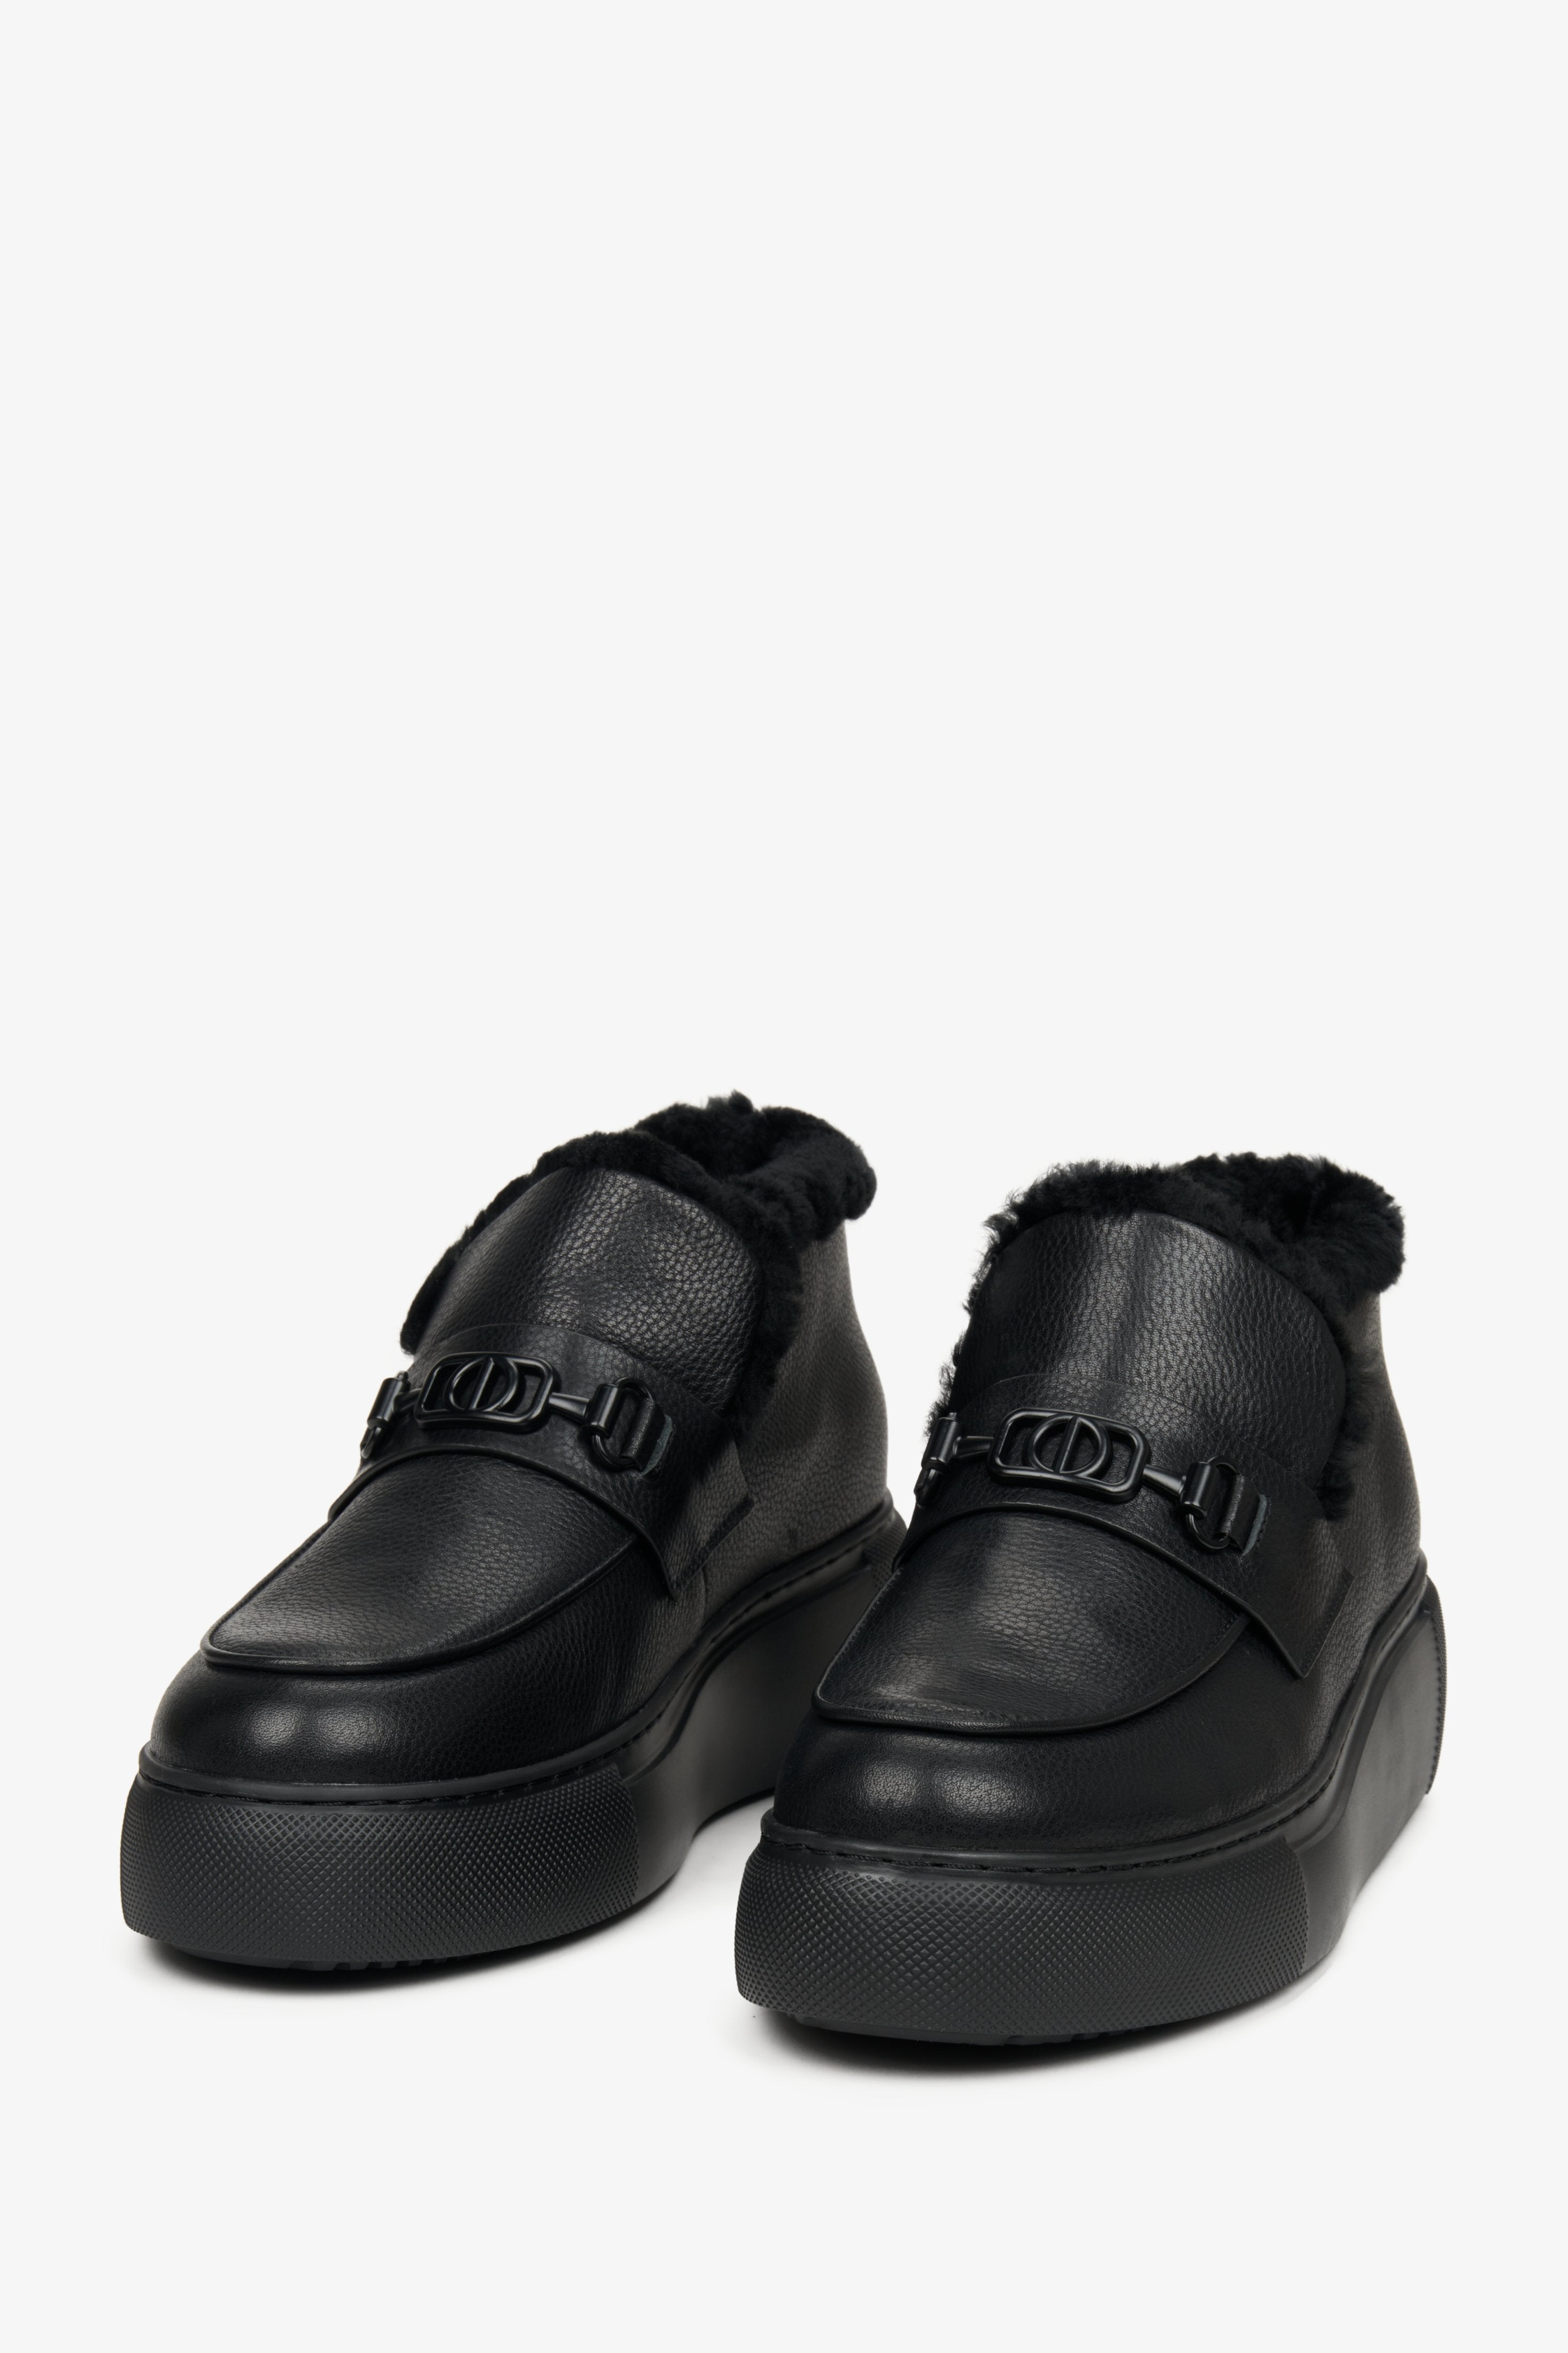 Czarne, niskie botki damskie Estro z futrem ze skóry naturalnej - przednia linia butów.